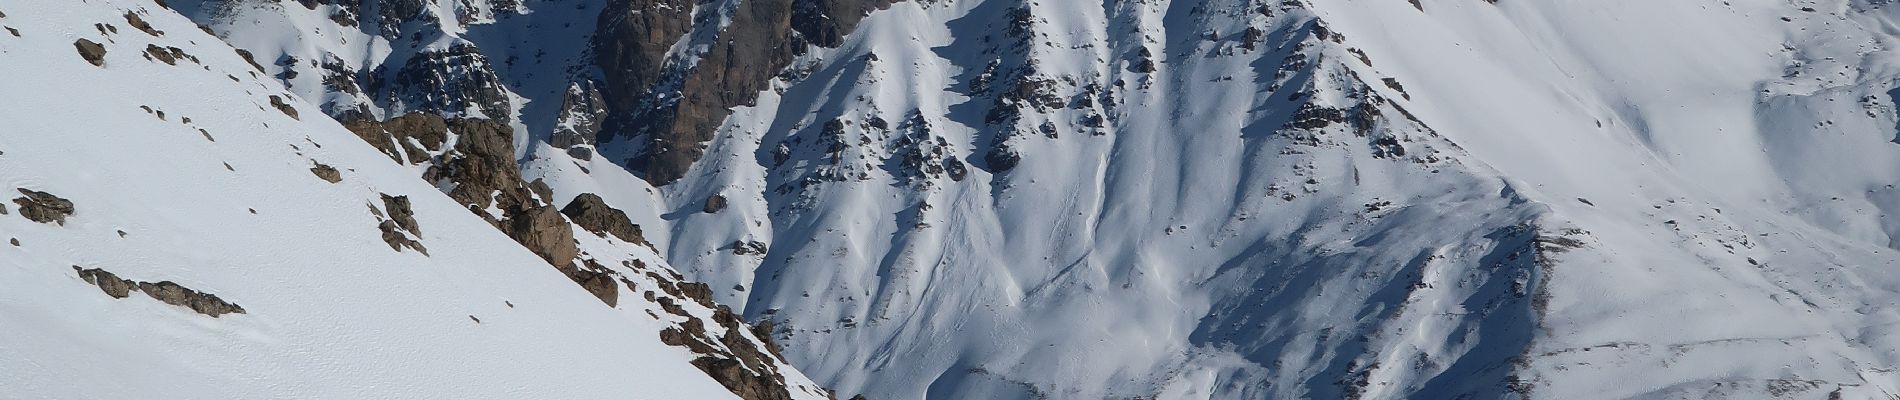 Randonnée Ski de randonnée Valloire - crête d'argentière sommet 2887m - Photo